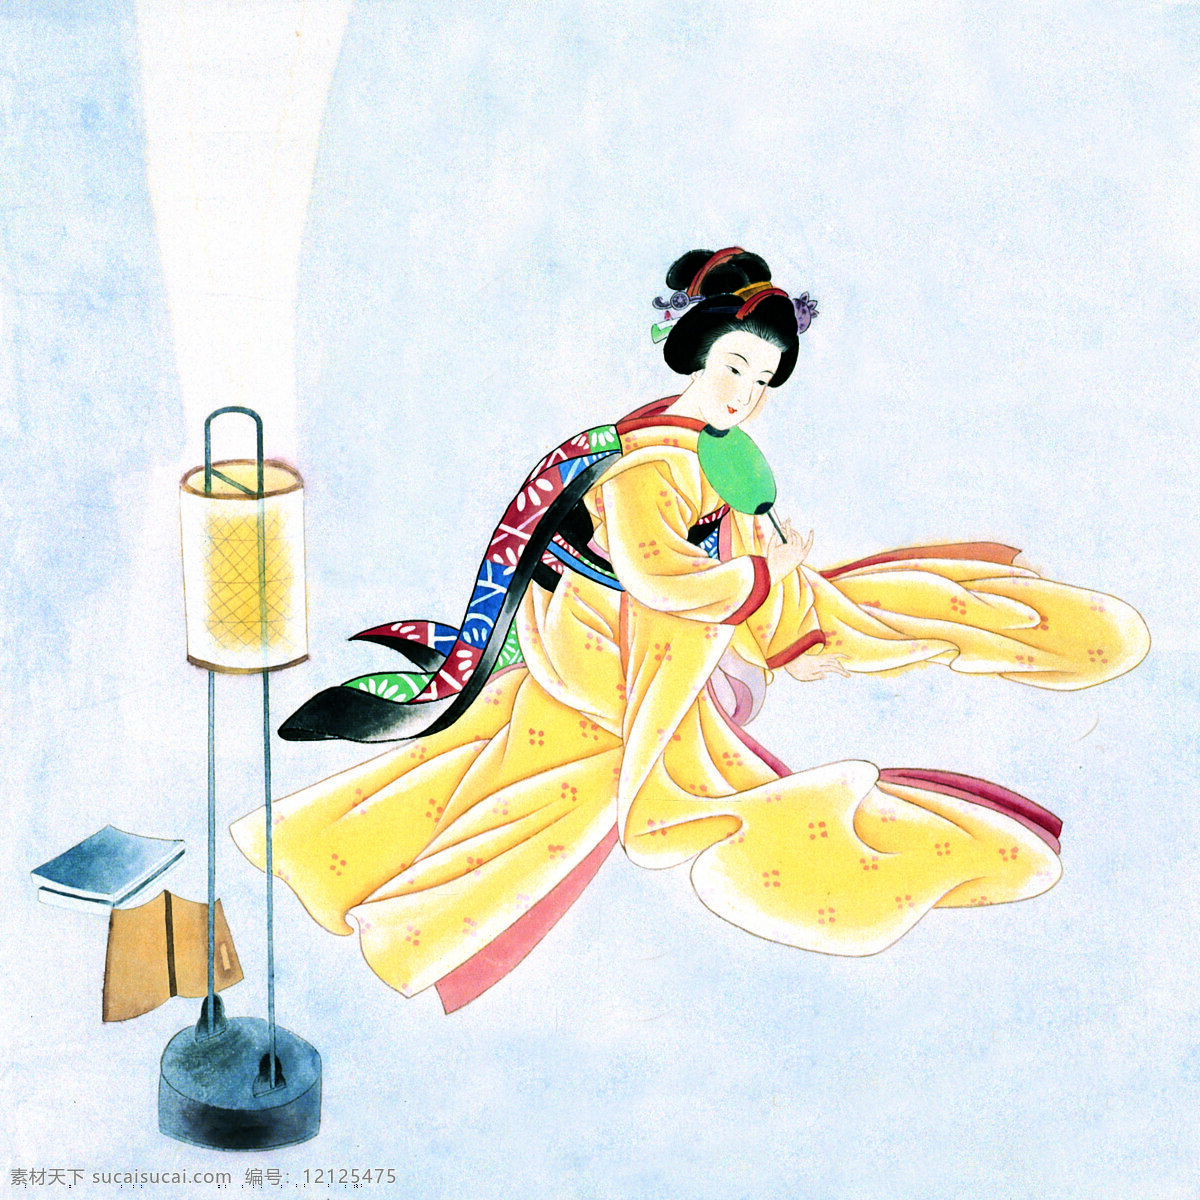 日本 和服 美女图片 水墨画 日本画 日本女性 和服女性 国画 中国画 绘画艺术 书画文字 文化艺术